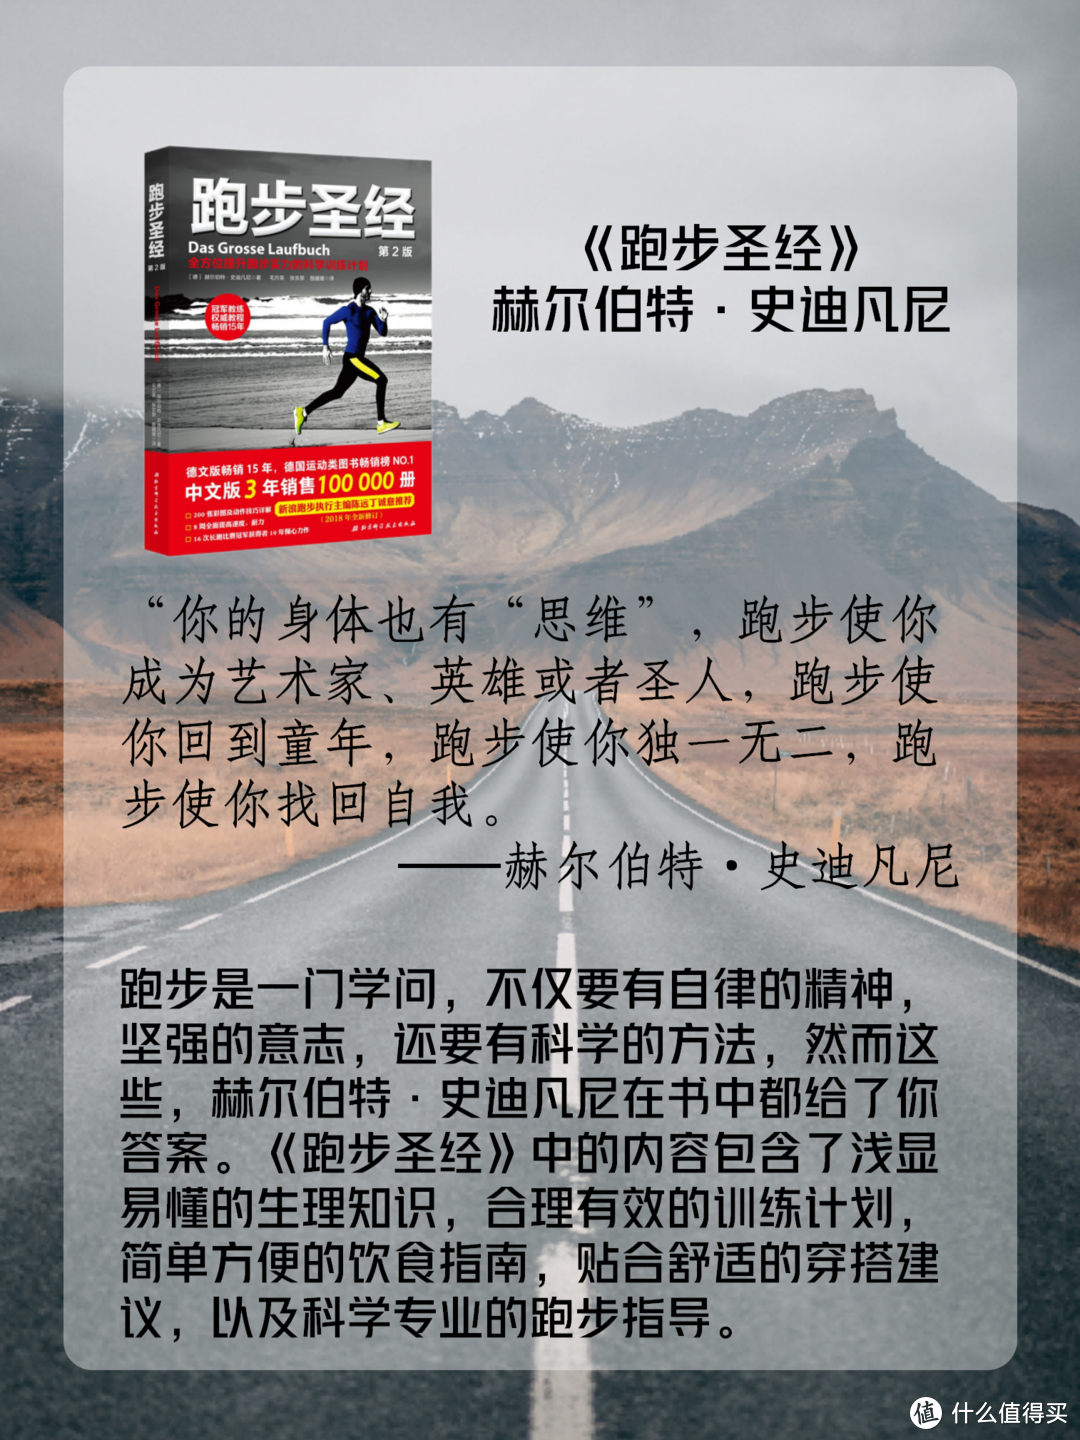 跑者 书单——跑步是跑者身体和精神的双重修行。